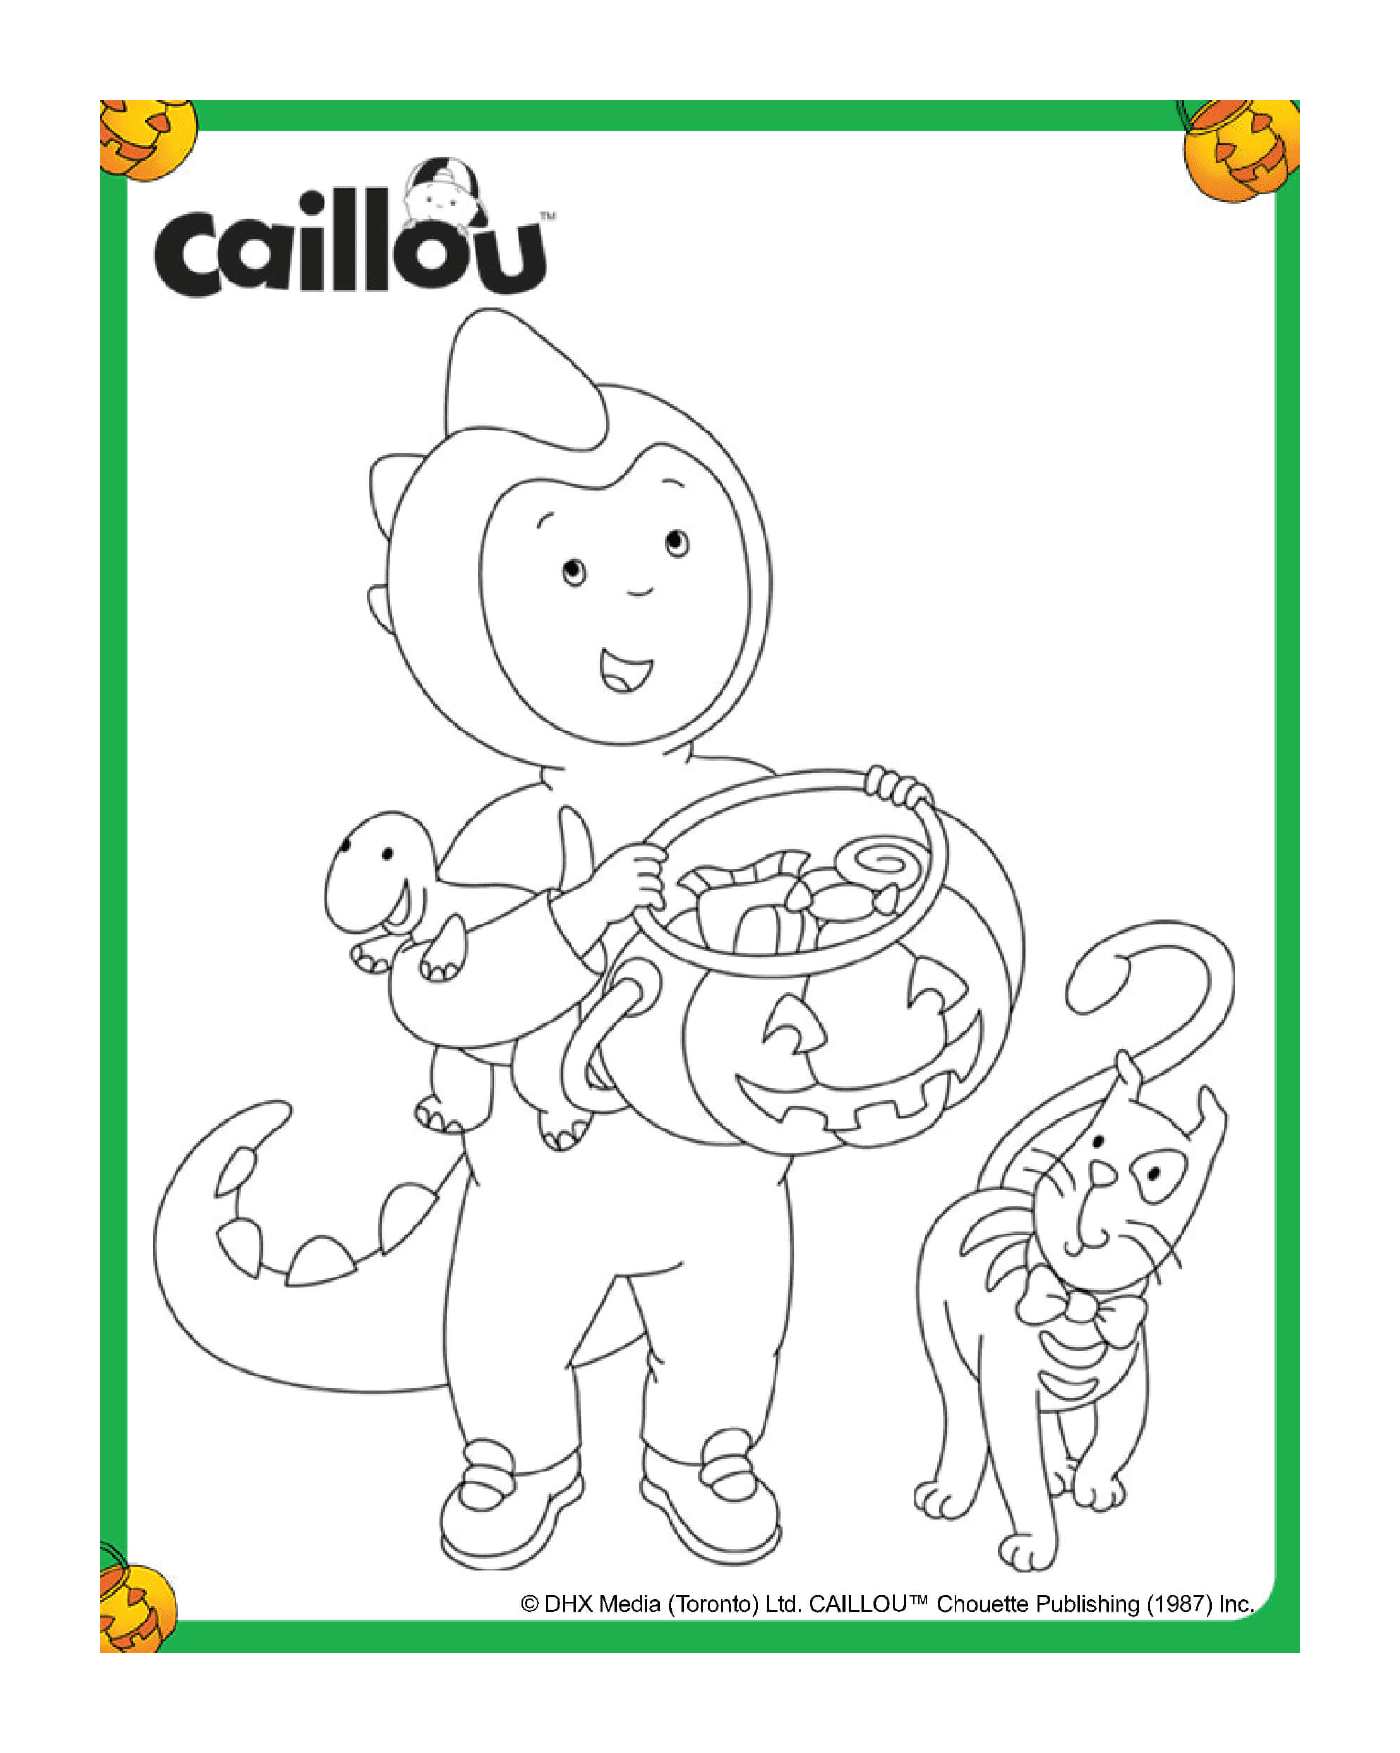  Caillou als Dinosaurier für Halloween verkleidet 